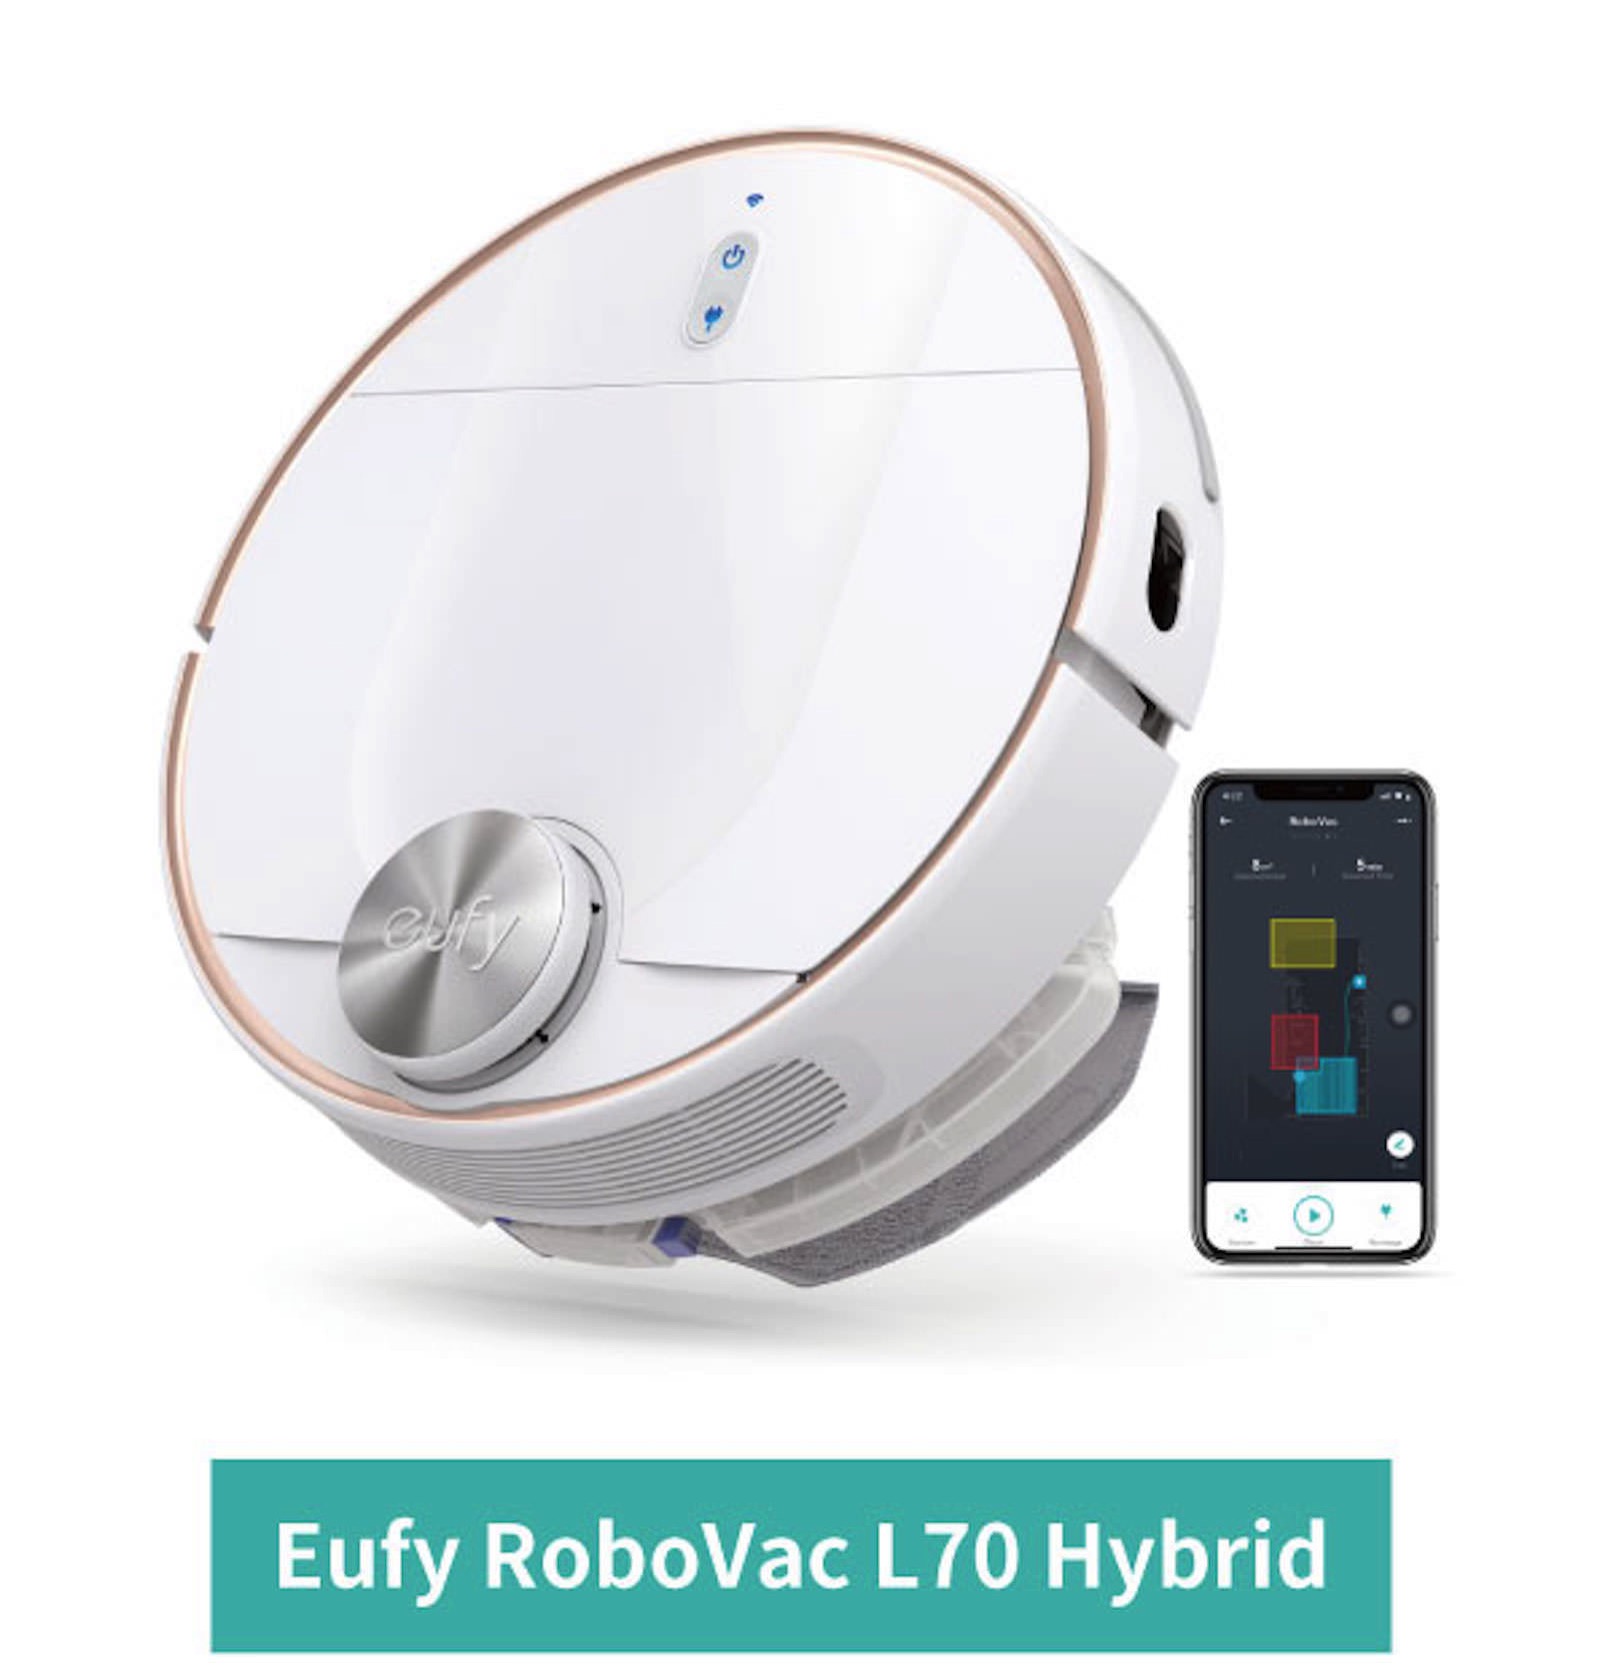 Eufy RoboVac L70 Hybrid